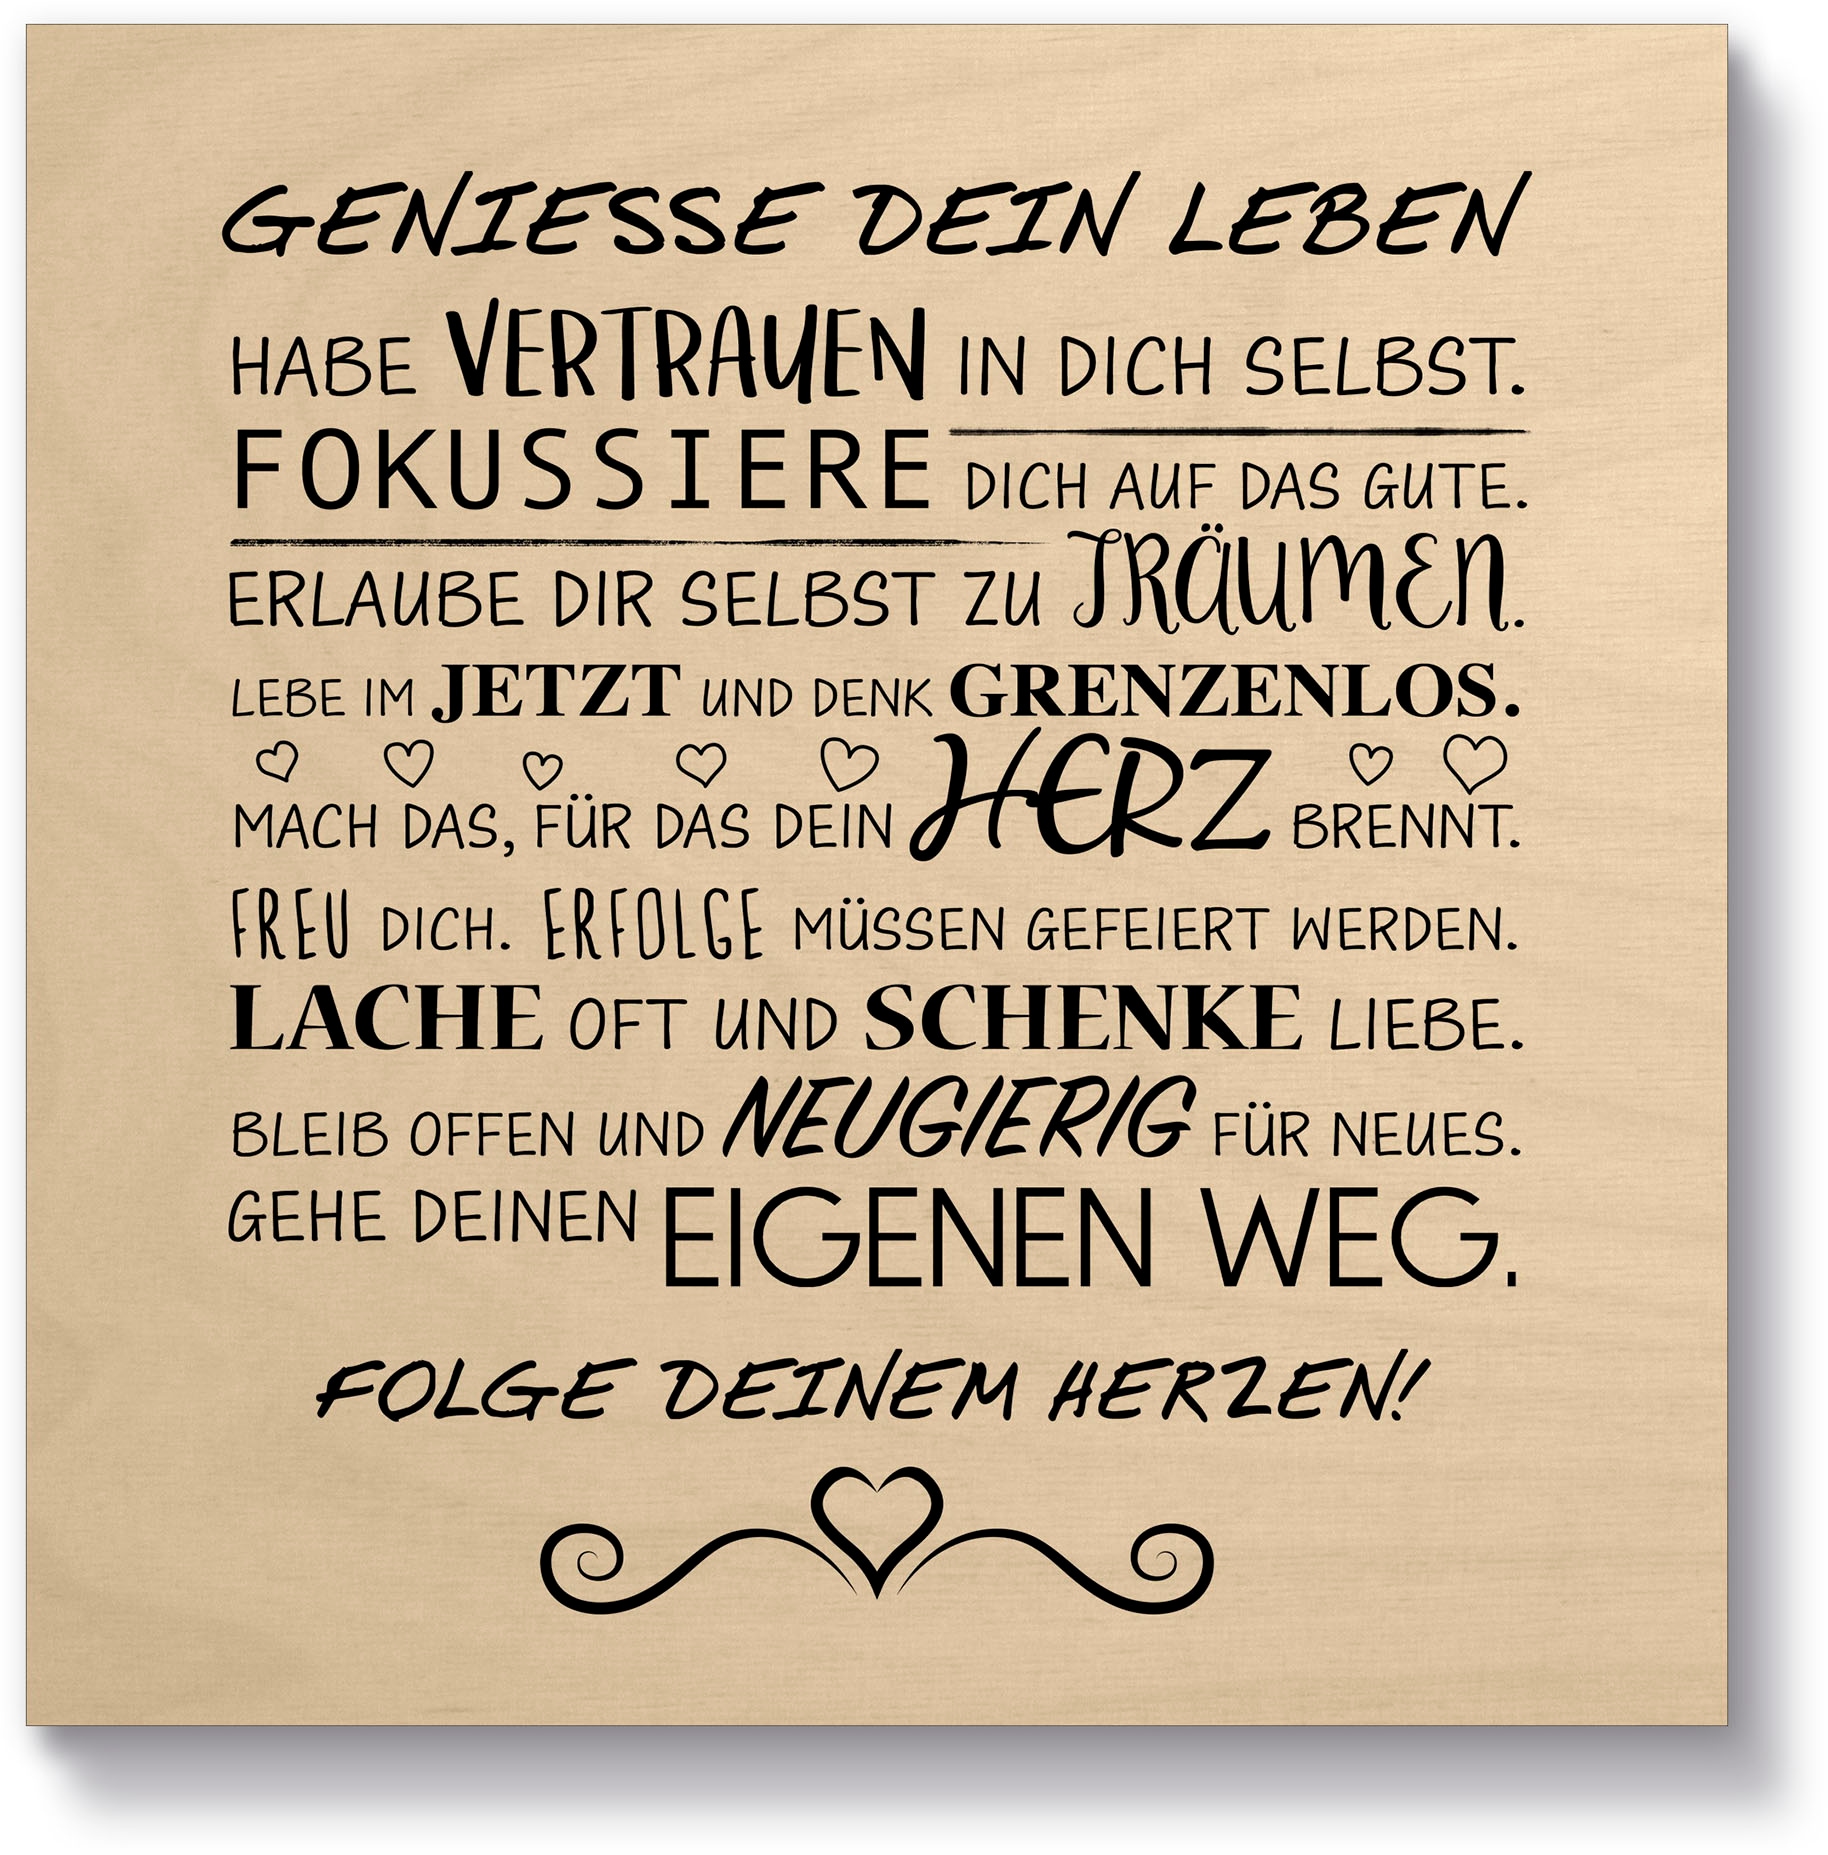 & (1 maintenant »Geniesse Texte, St.) Holzbild Sprüche dein Artland Leben«,